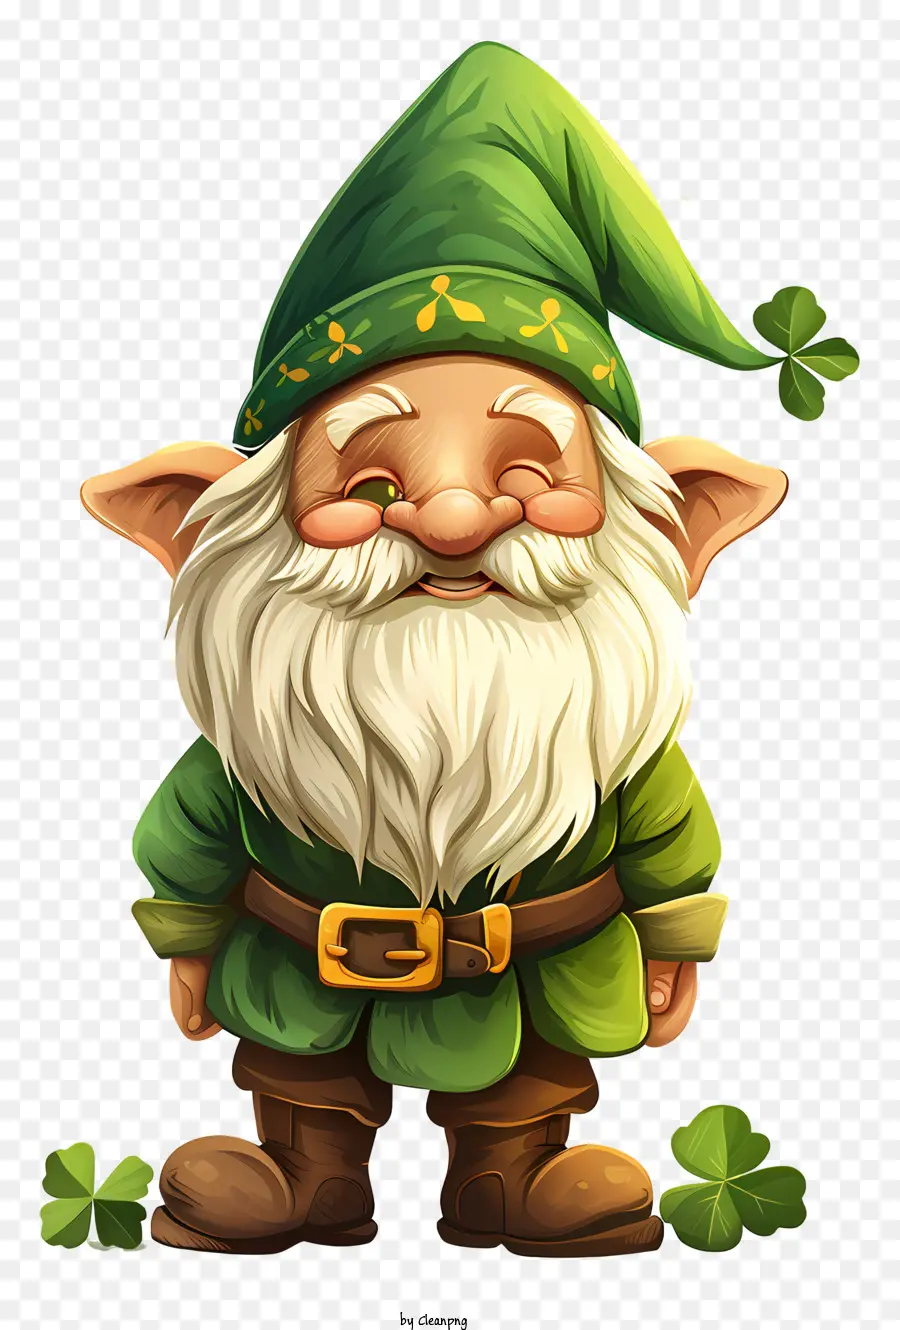 Ngày của Statrick's Gnome nhân vật hoạt hình trang phục màu xanh lá cây - Nhân vật hoạt hình với trang phục màu xanh lá cây và nụ cười